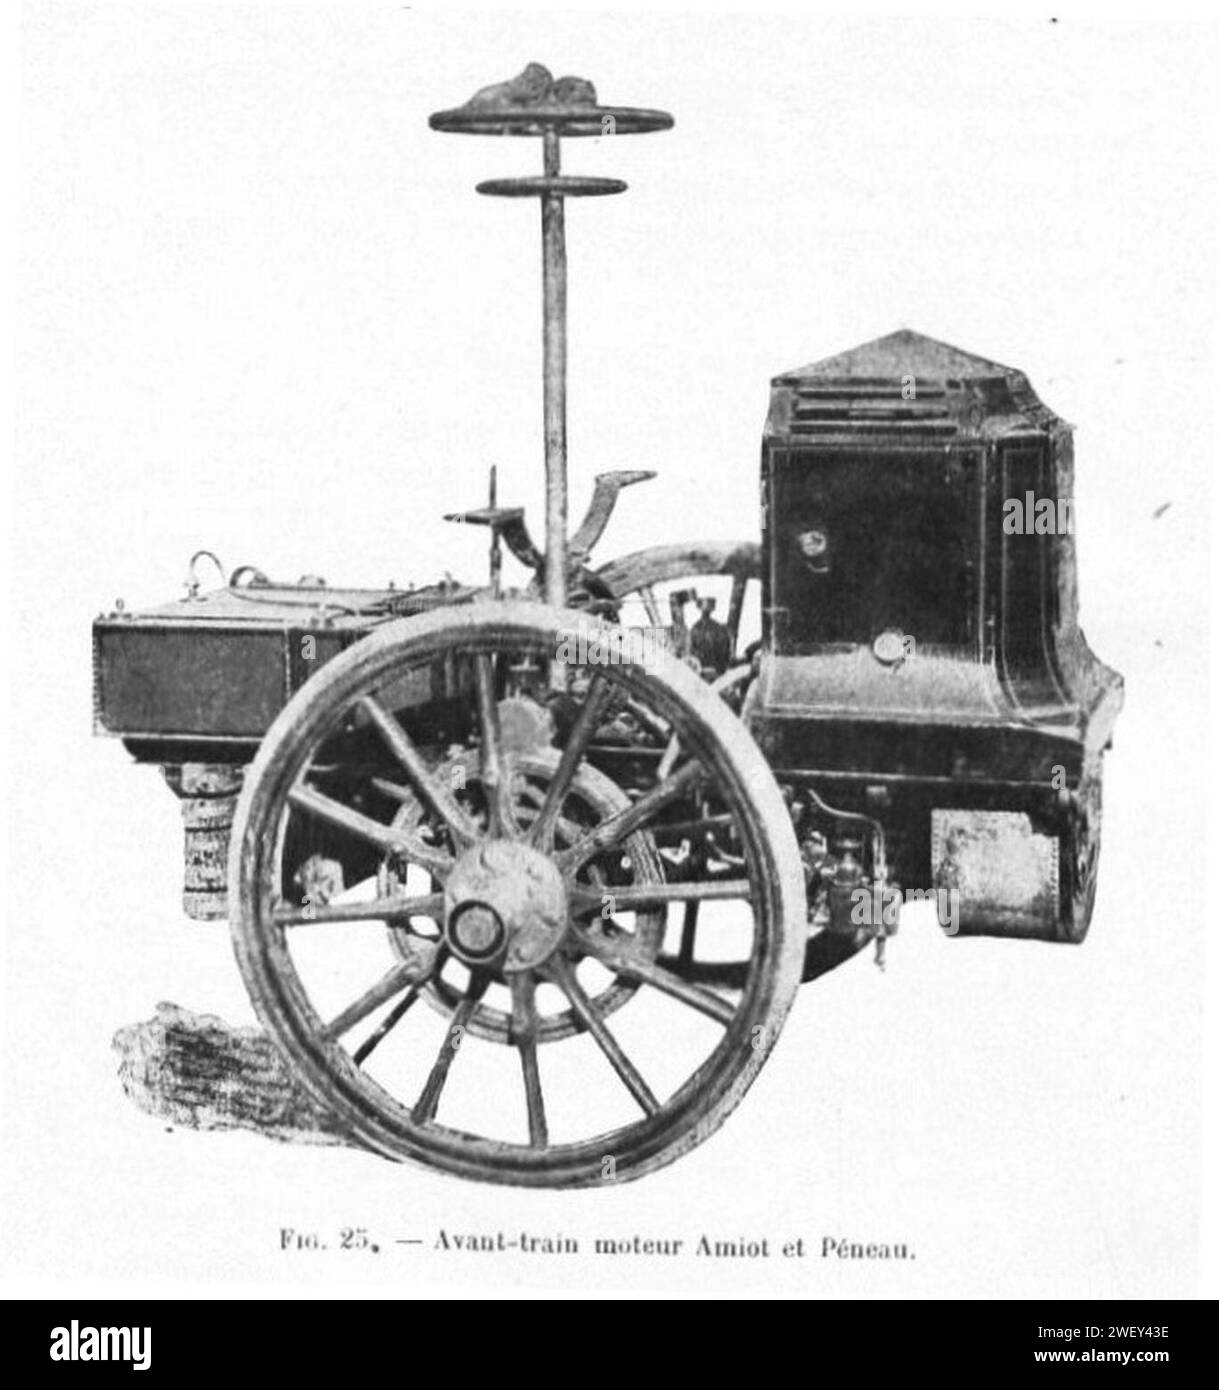 Amiot-Péneau Avant-train moteur Augé (1899). Stock Photo